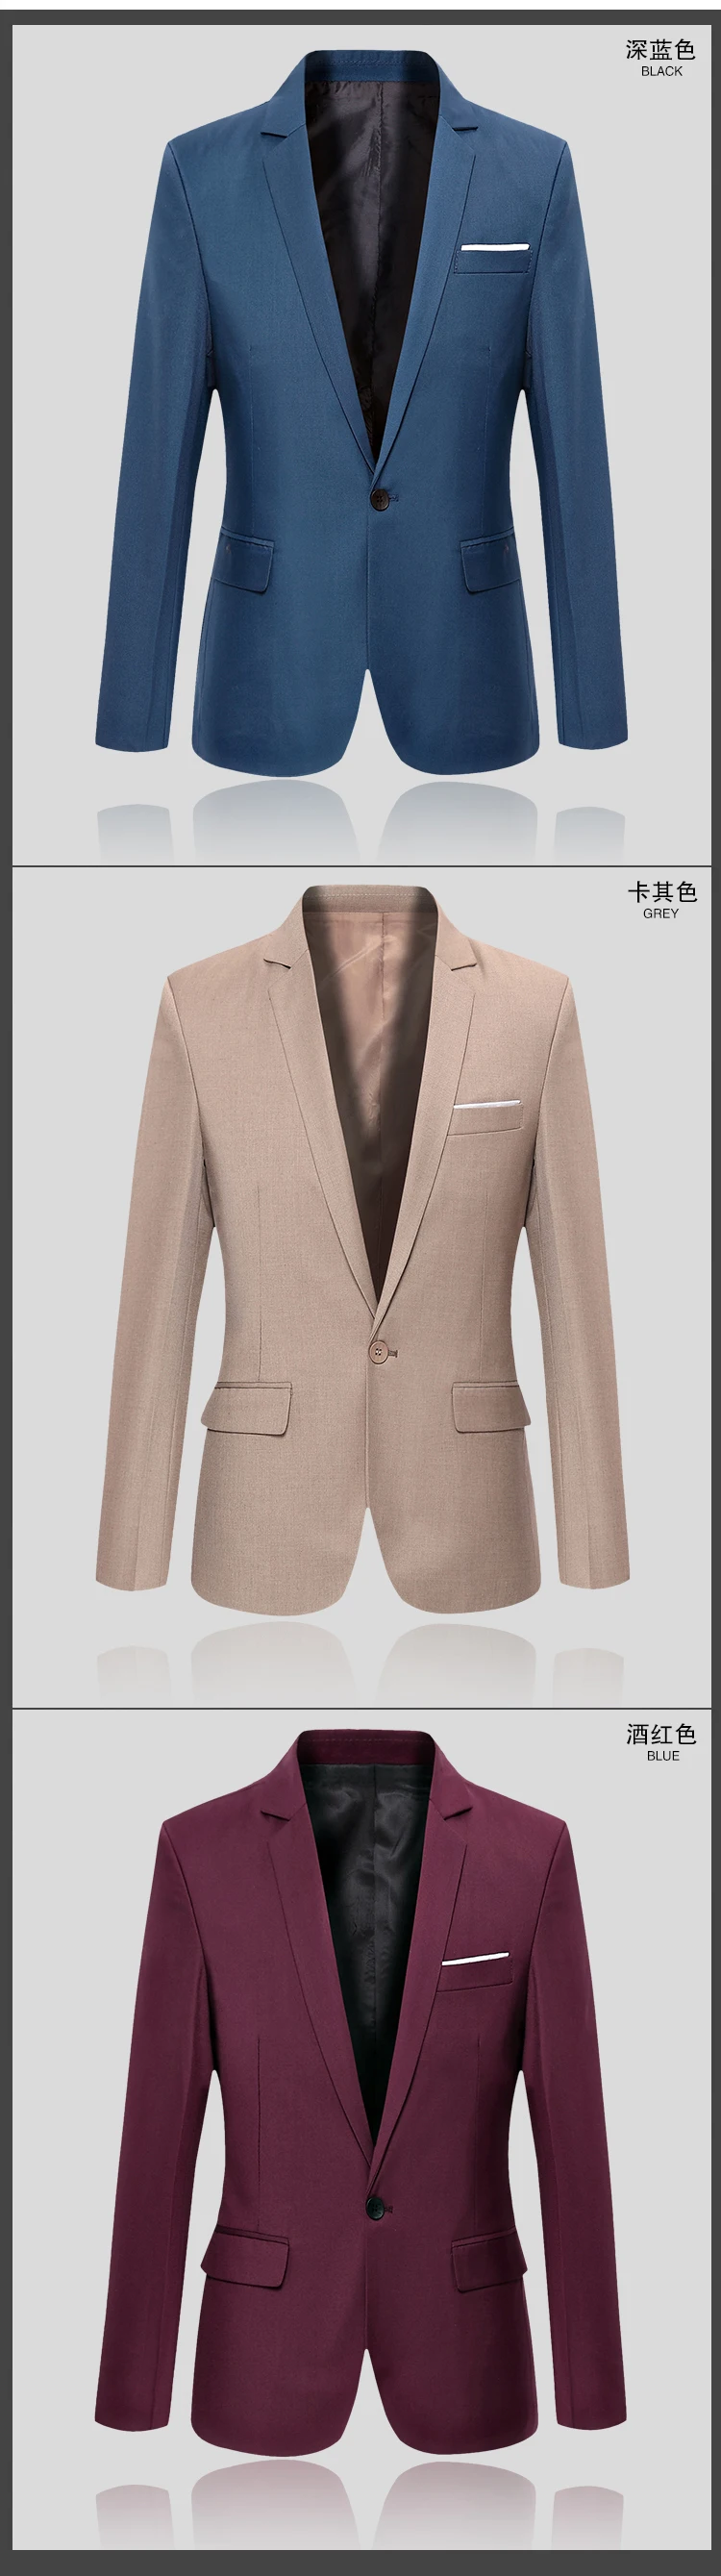 Повседневные комплекты одежды для Для мужчин мода пиджак Slim Fit Мужской брендовая одежда Для Мужчин's Пальто для будущих мам семь Цвета